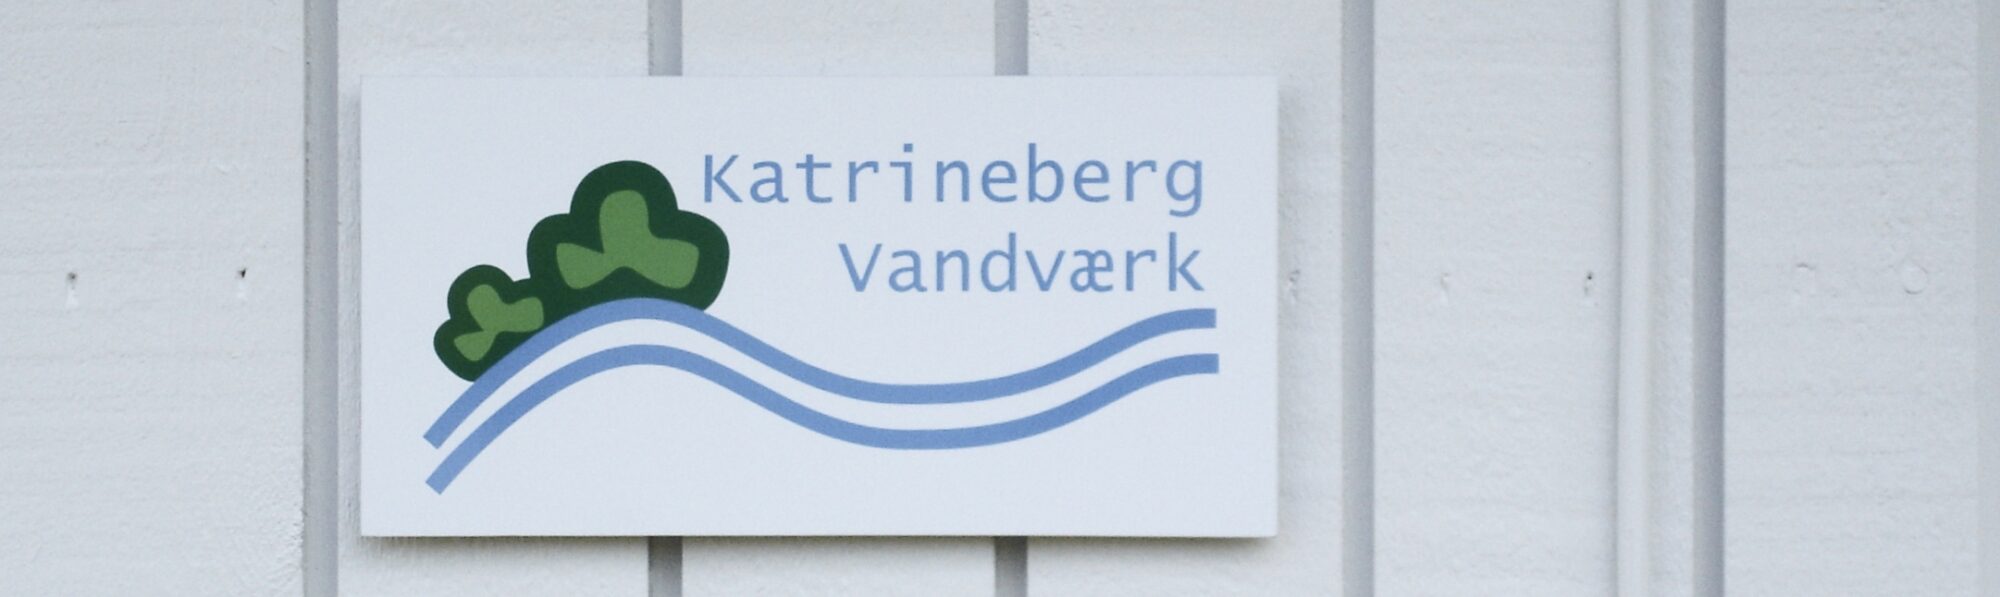 Katrineberg Vandværk 